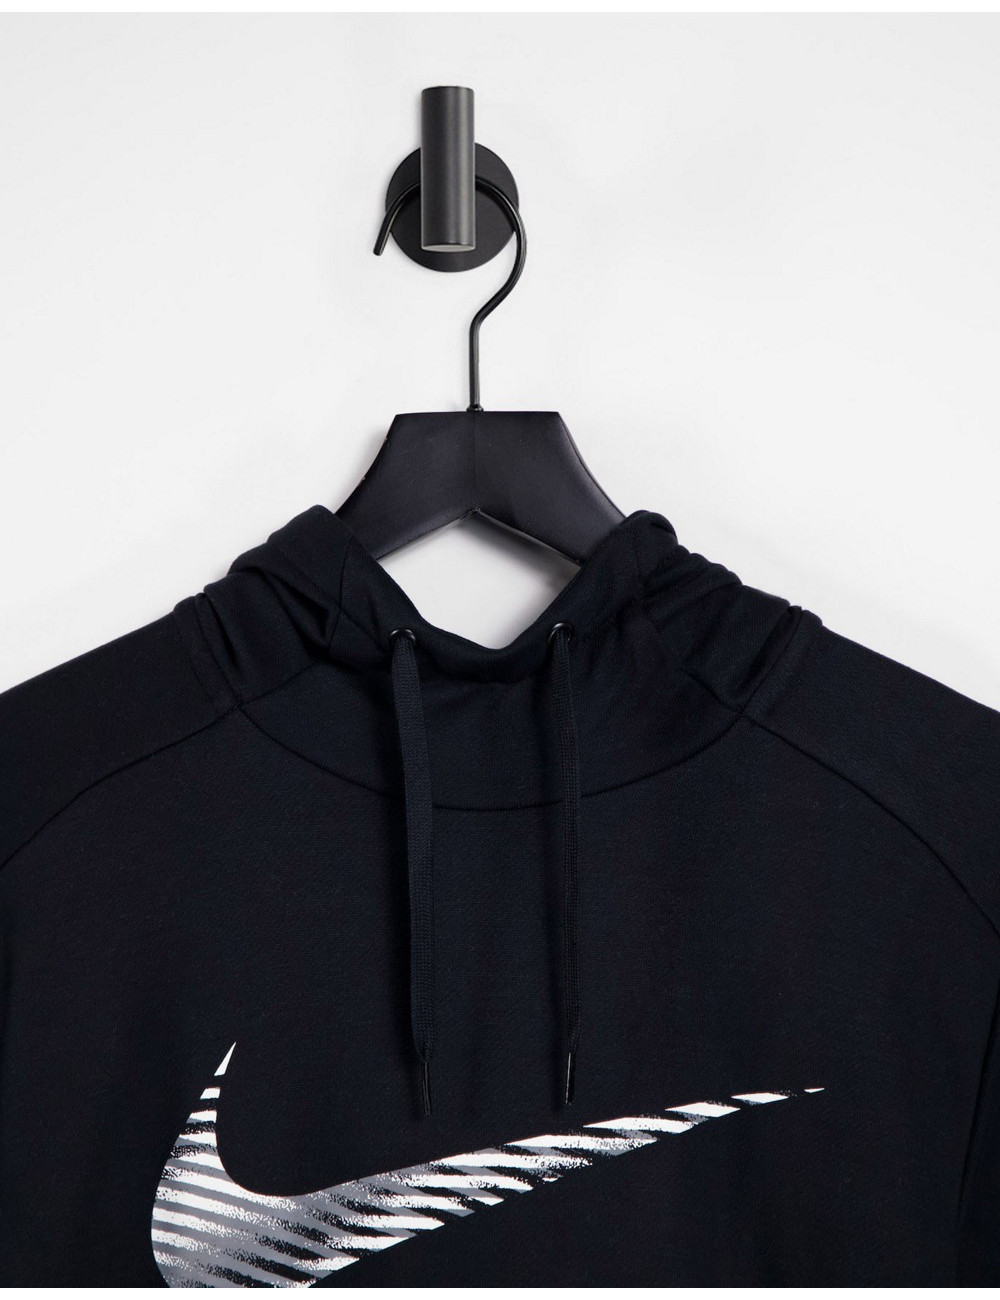 Nike Dri-FIT hoodie in black